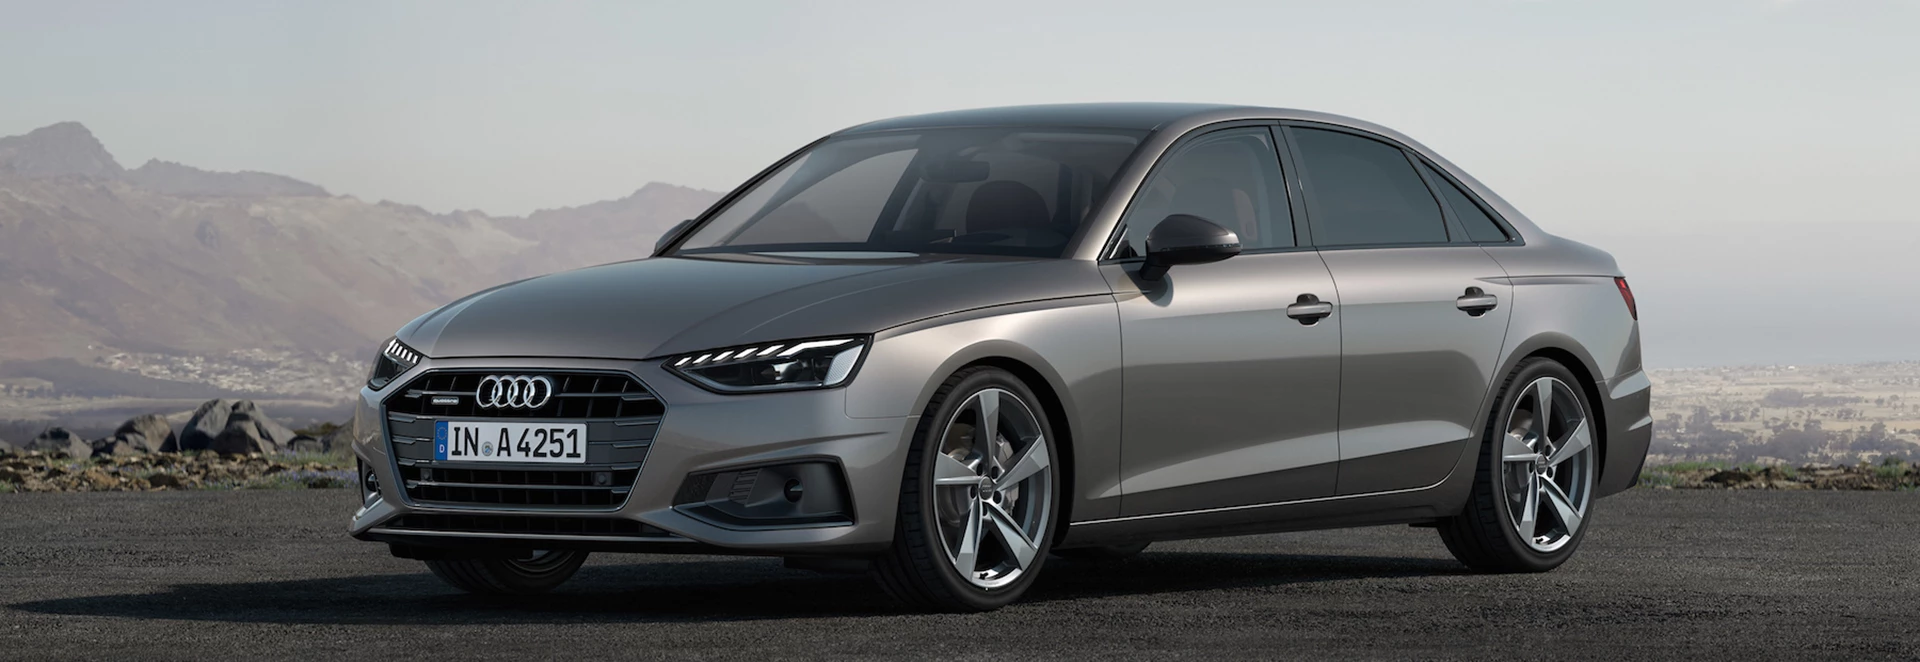 Audi A4 2019 Review Car Keys